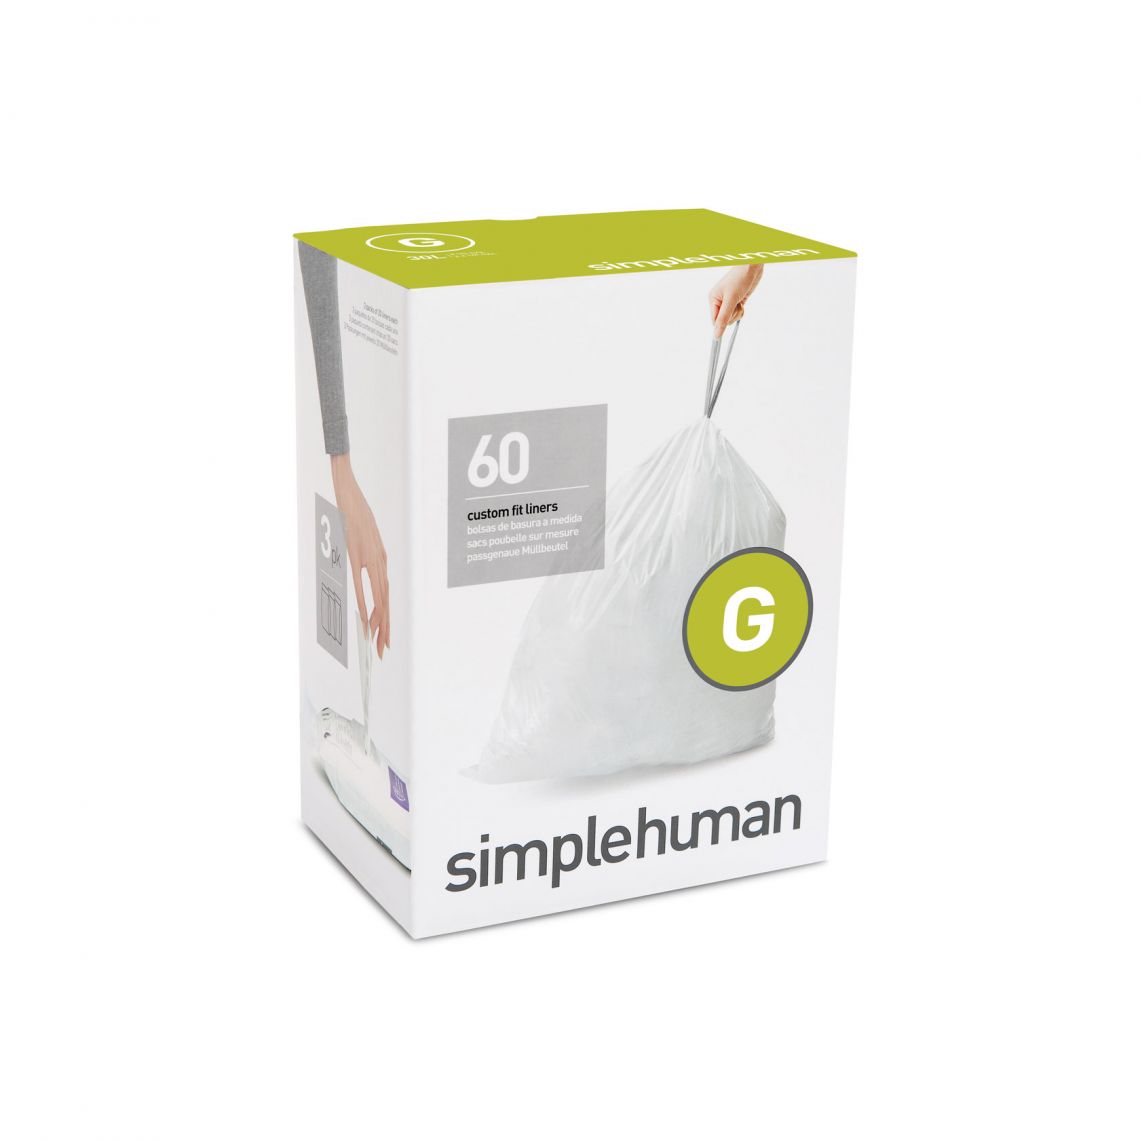 שקיות אשפה לפח 30 ליטר (G) דגם Simplehuman - CW0166 - סימפליומן